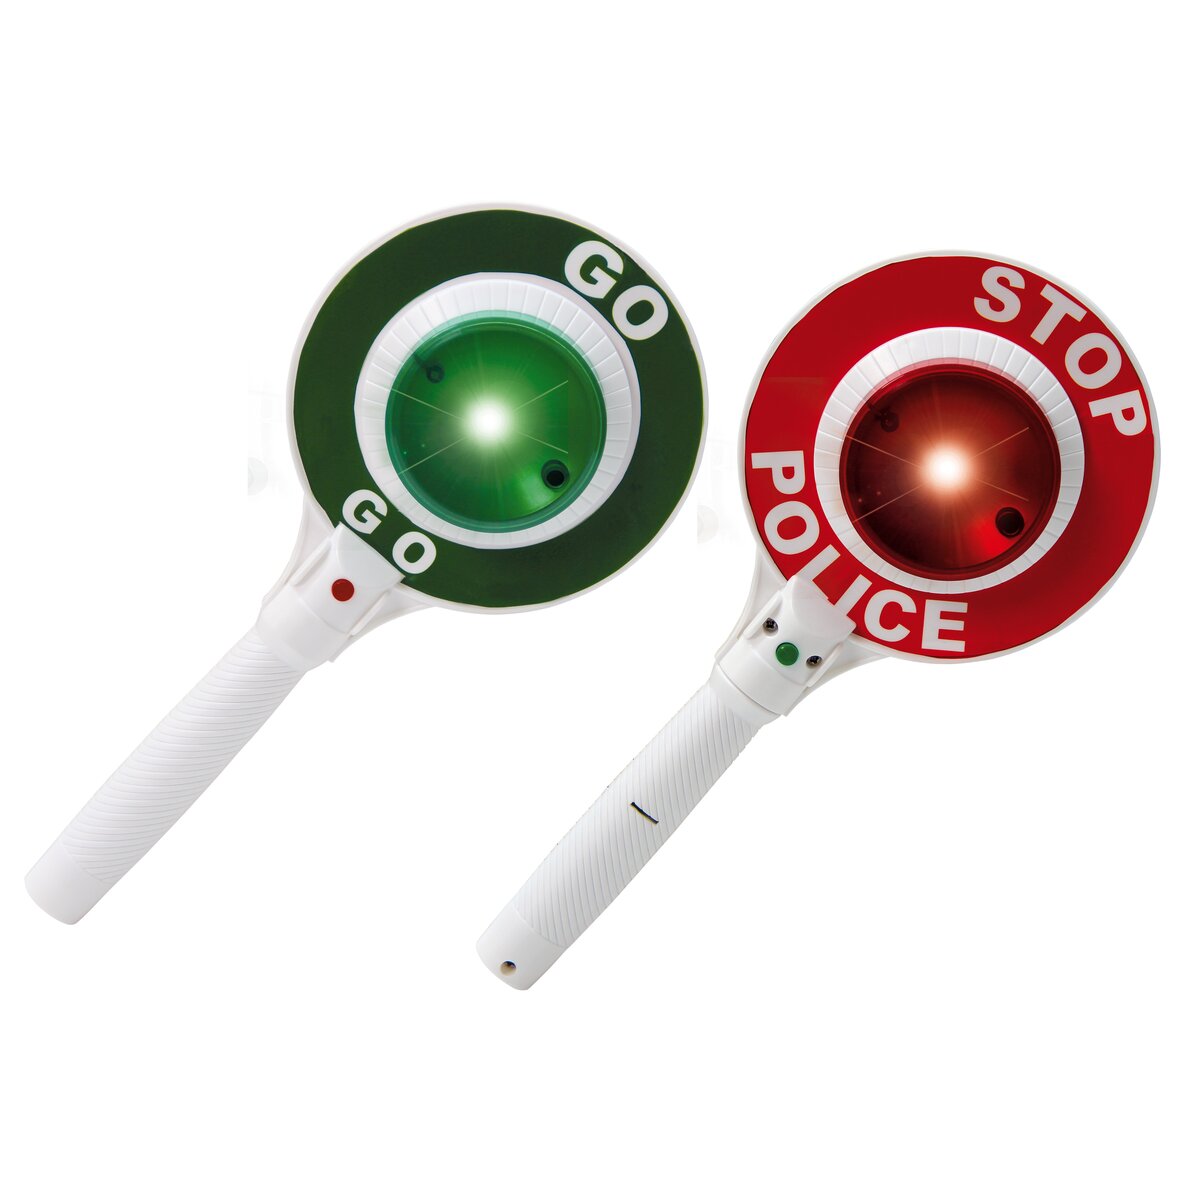 Polizeikelle Kinder mit Lichtfunktion, Handkelle Stopp Kelle mit rot grün  Licht